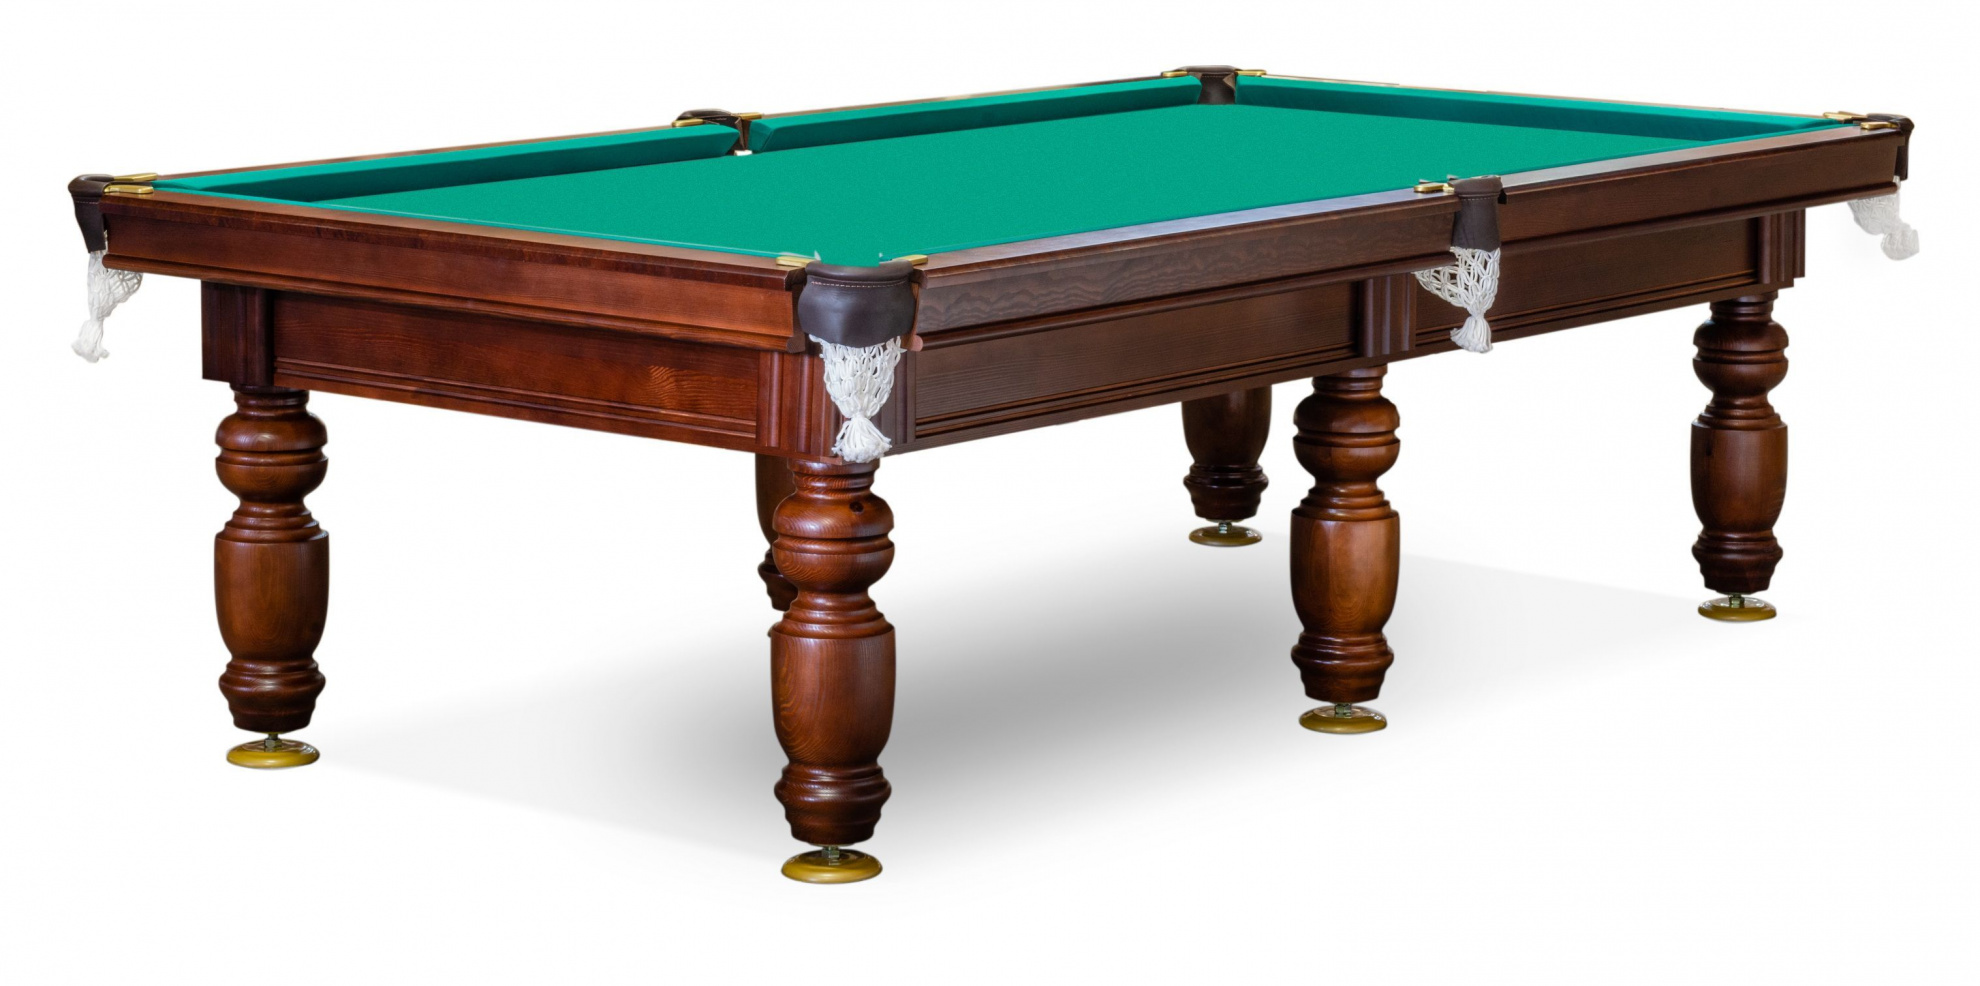 Weekend Billiard Ладога 8 футов из каталога игровых столов в Санкт-Петербурге по цене 103445 ₽